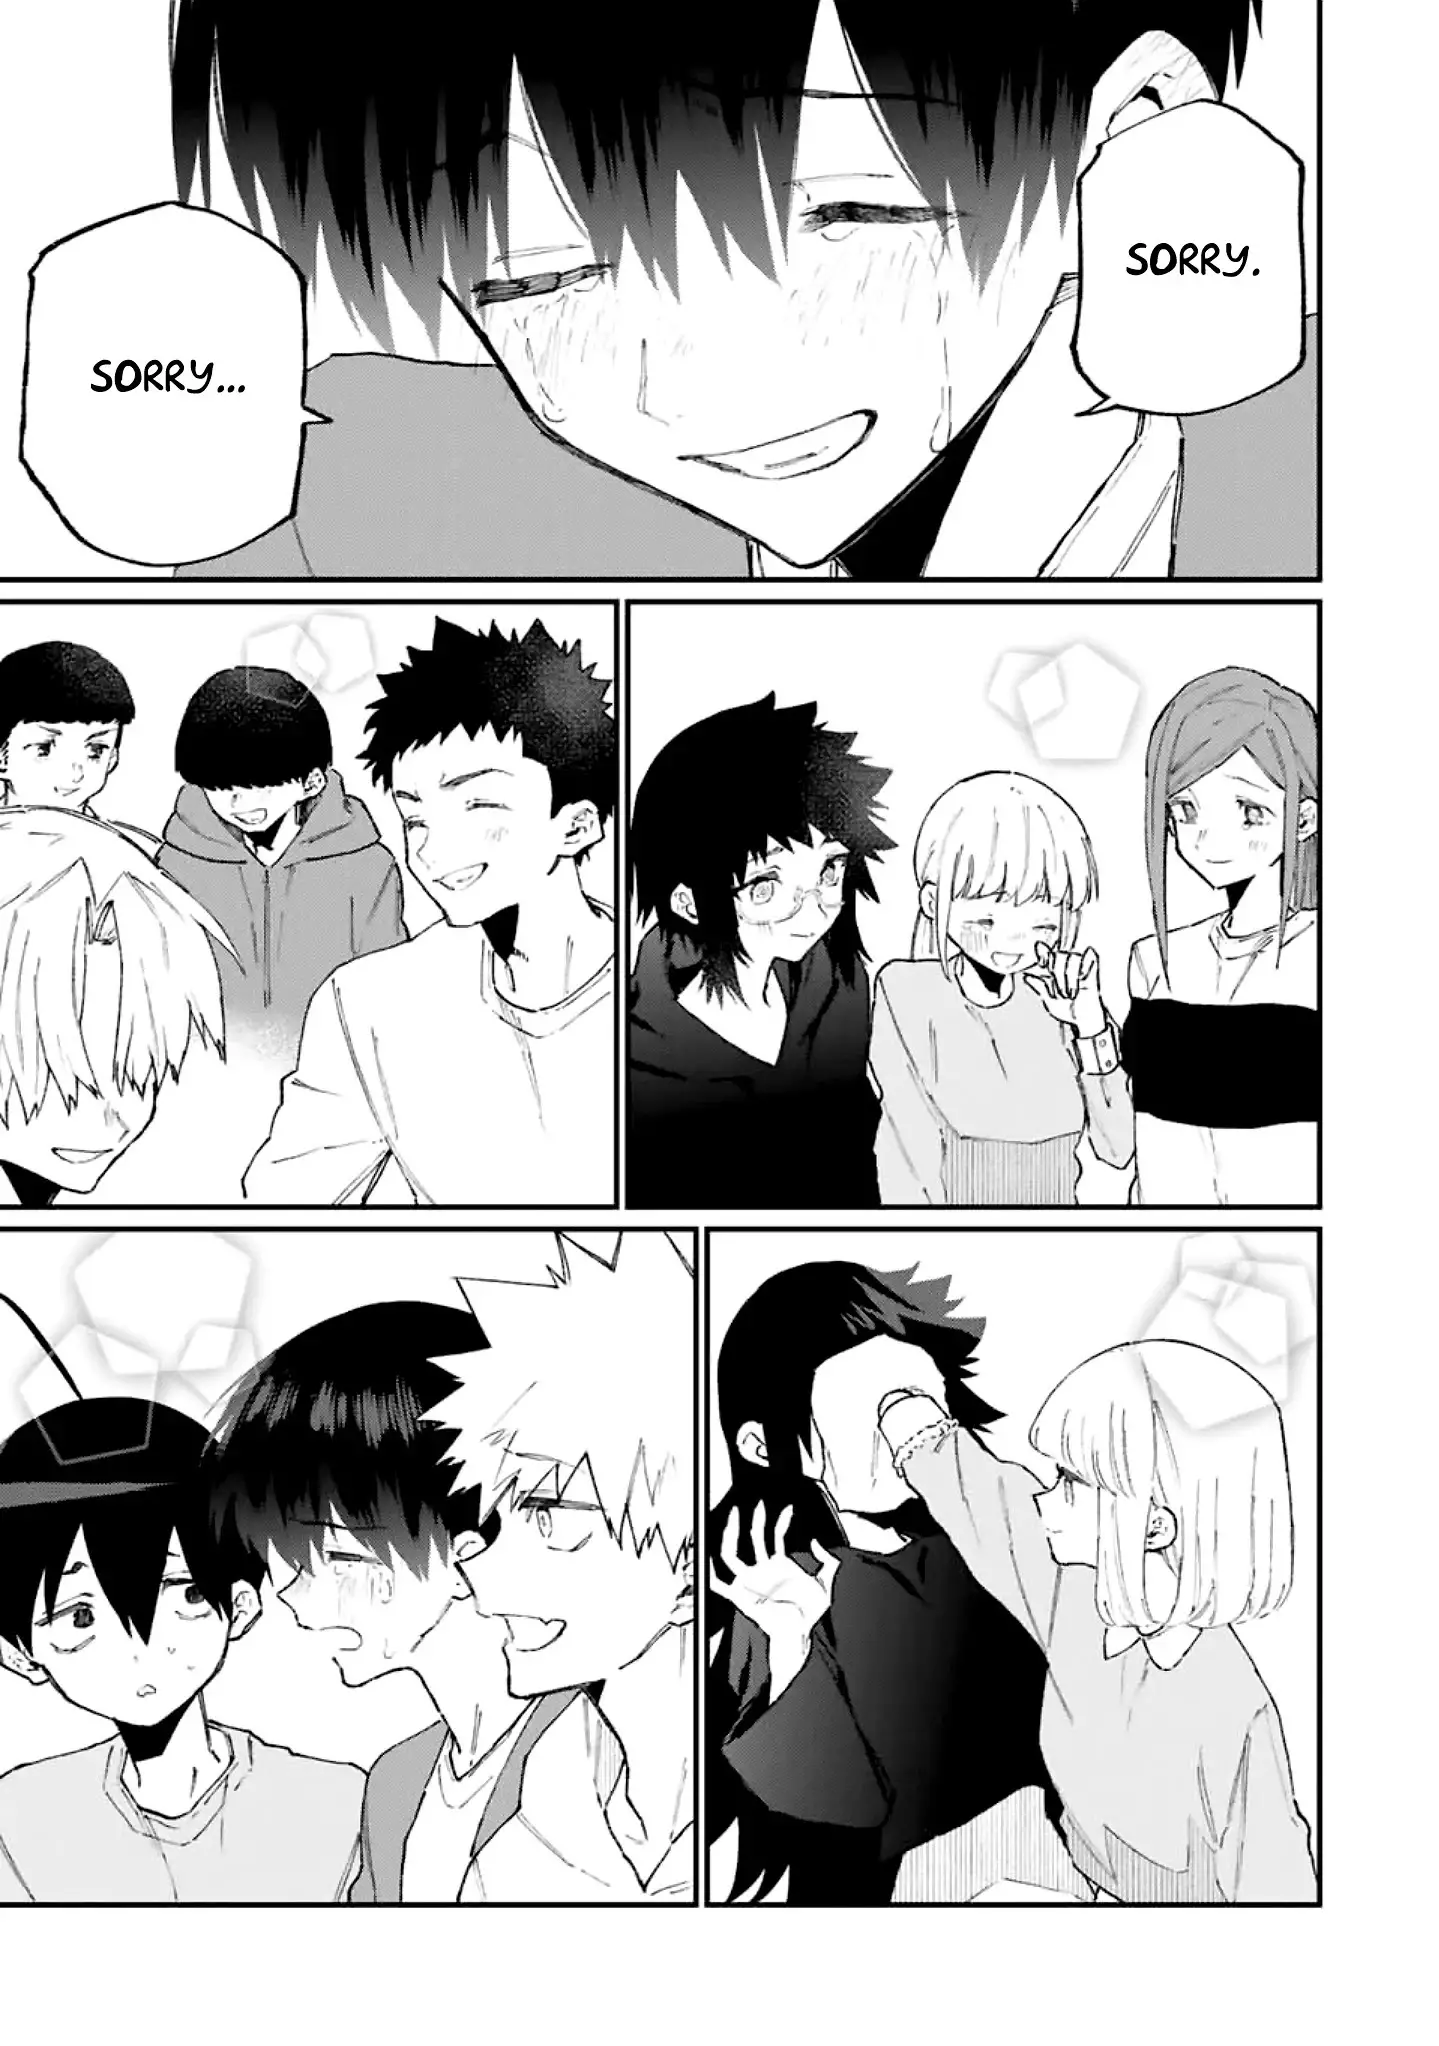 Shikimori's Not Just A Cutie - 117 page 4